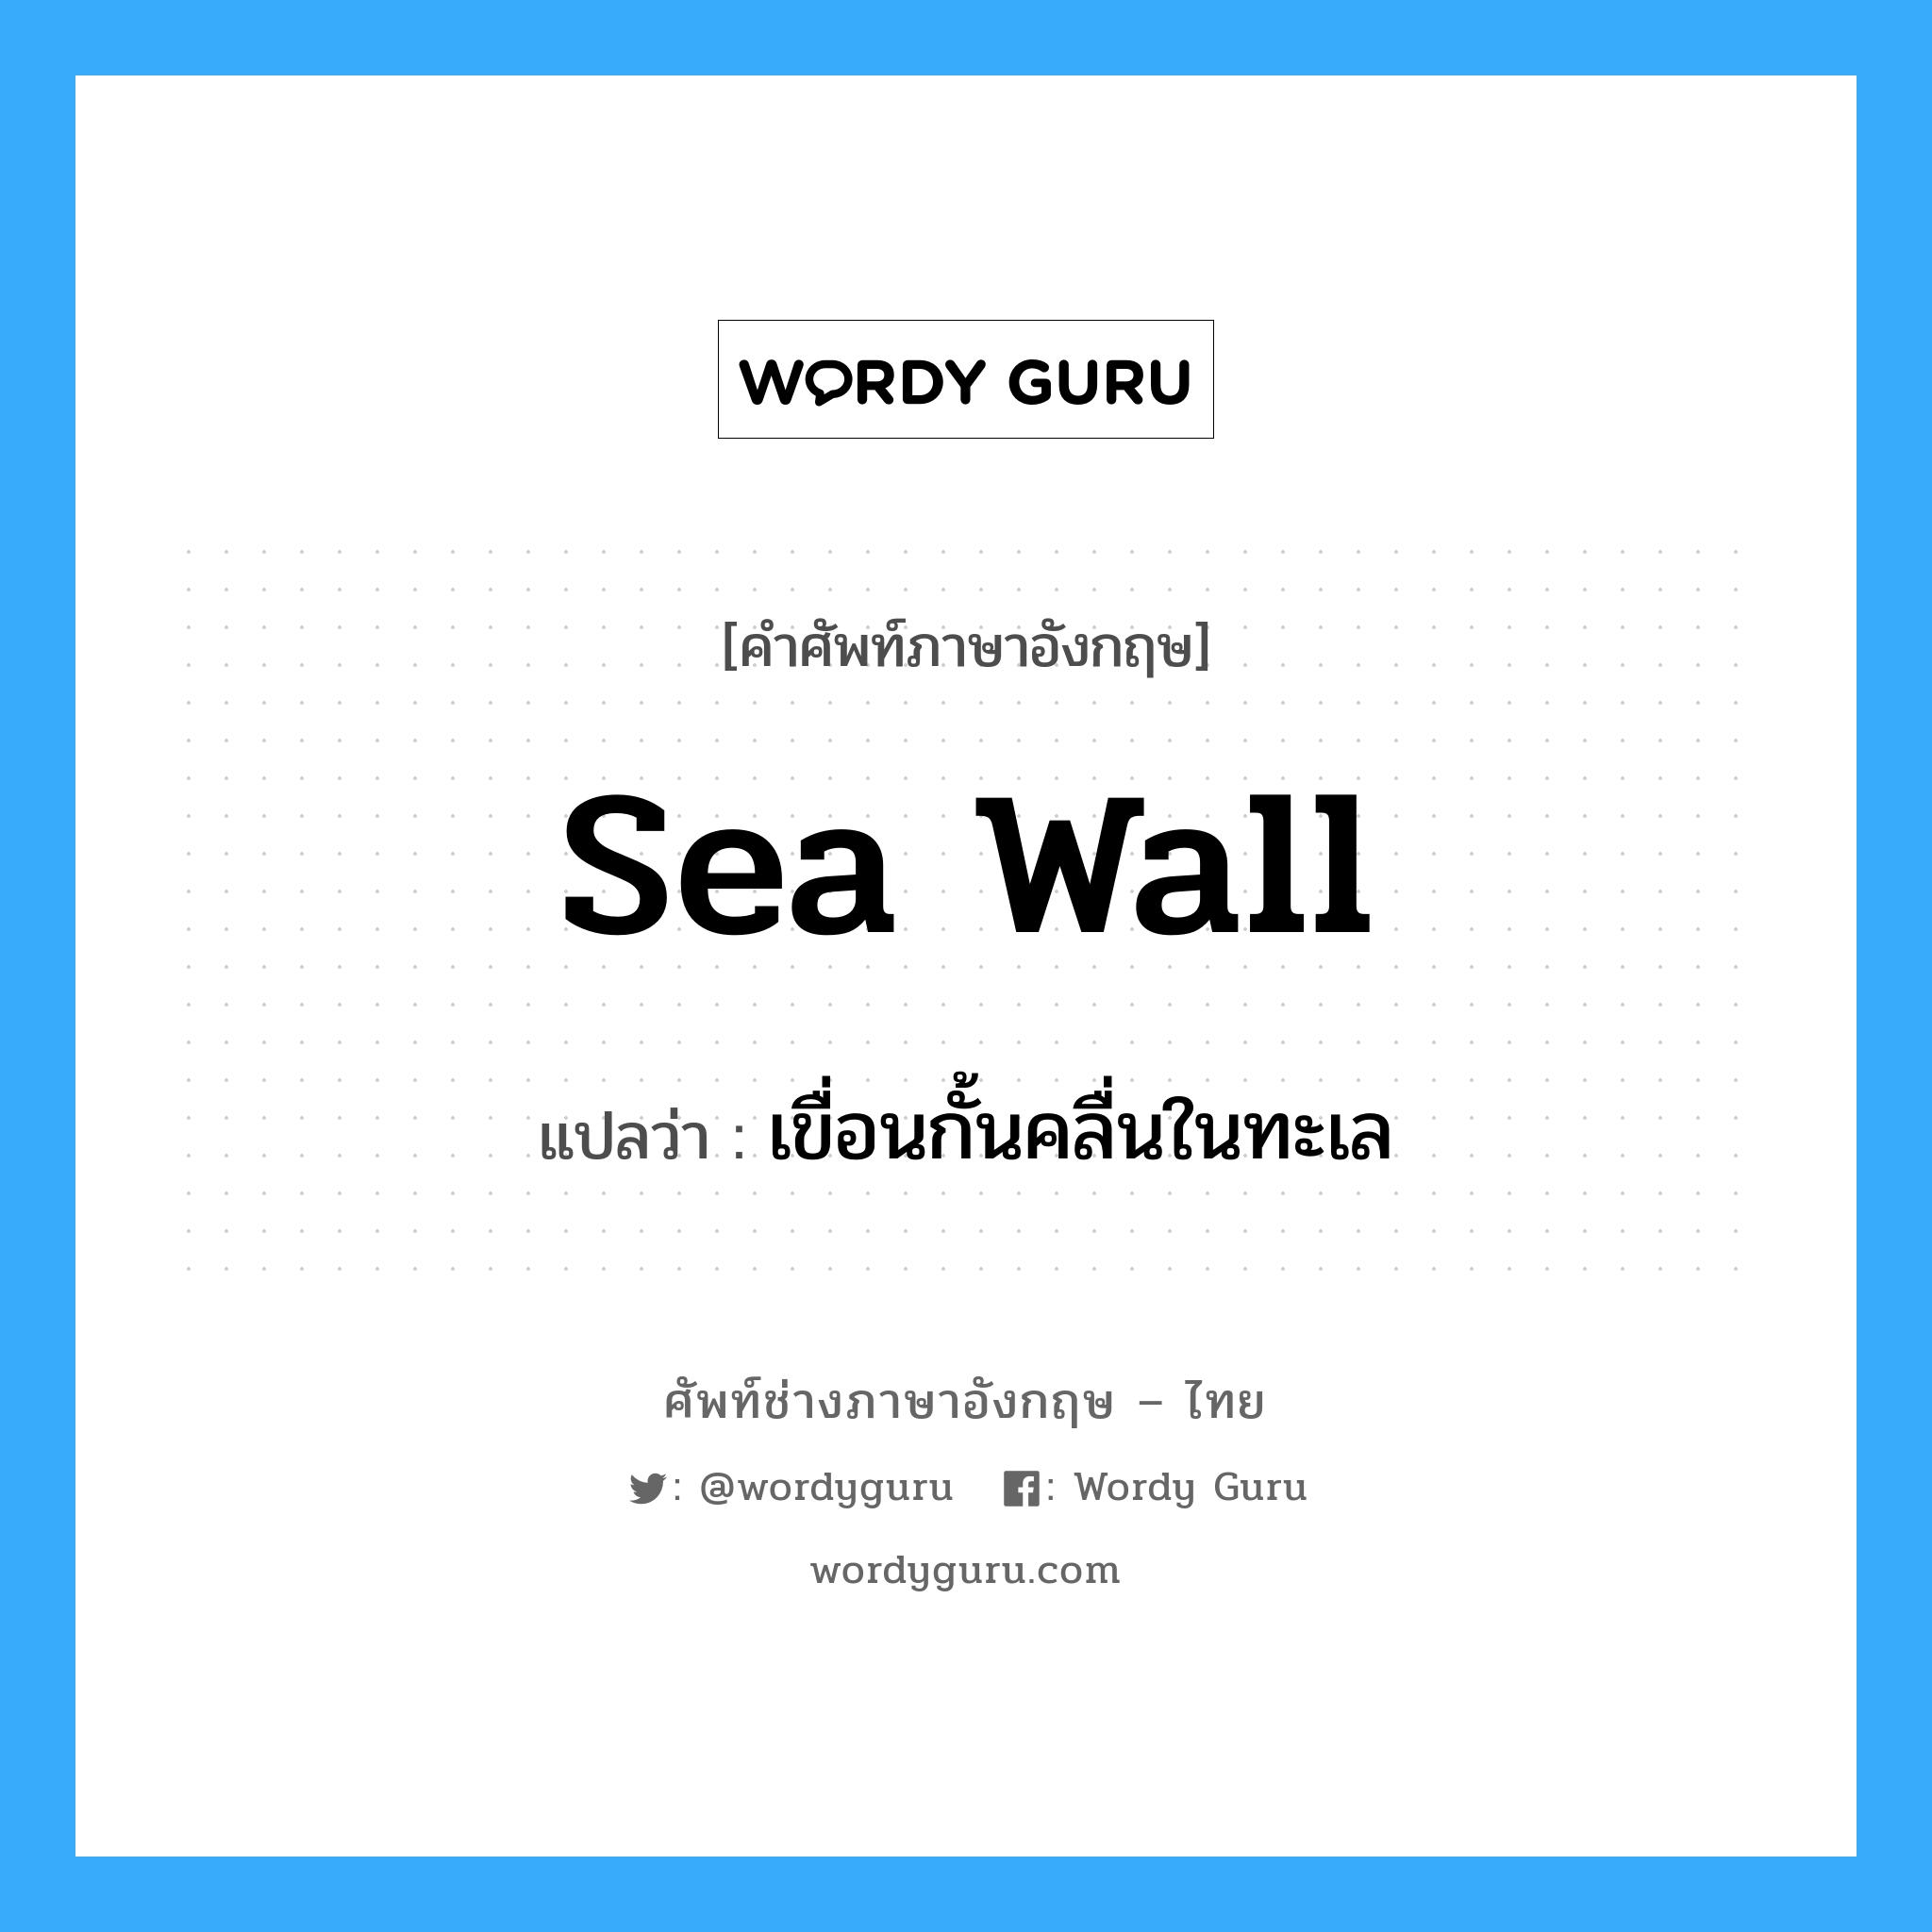 sea wall แปลว่า?, คำศัพท์ช่างภาษาอังกฤษ - ไทย sea wall คำศัพท์ภาษาอังกฤษ sea wall แปลว่า เขื่อนกั้นคลื่นในทะเล